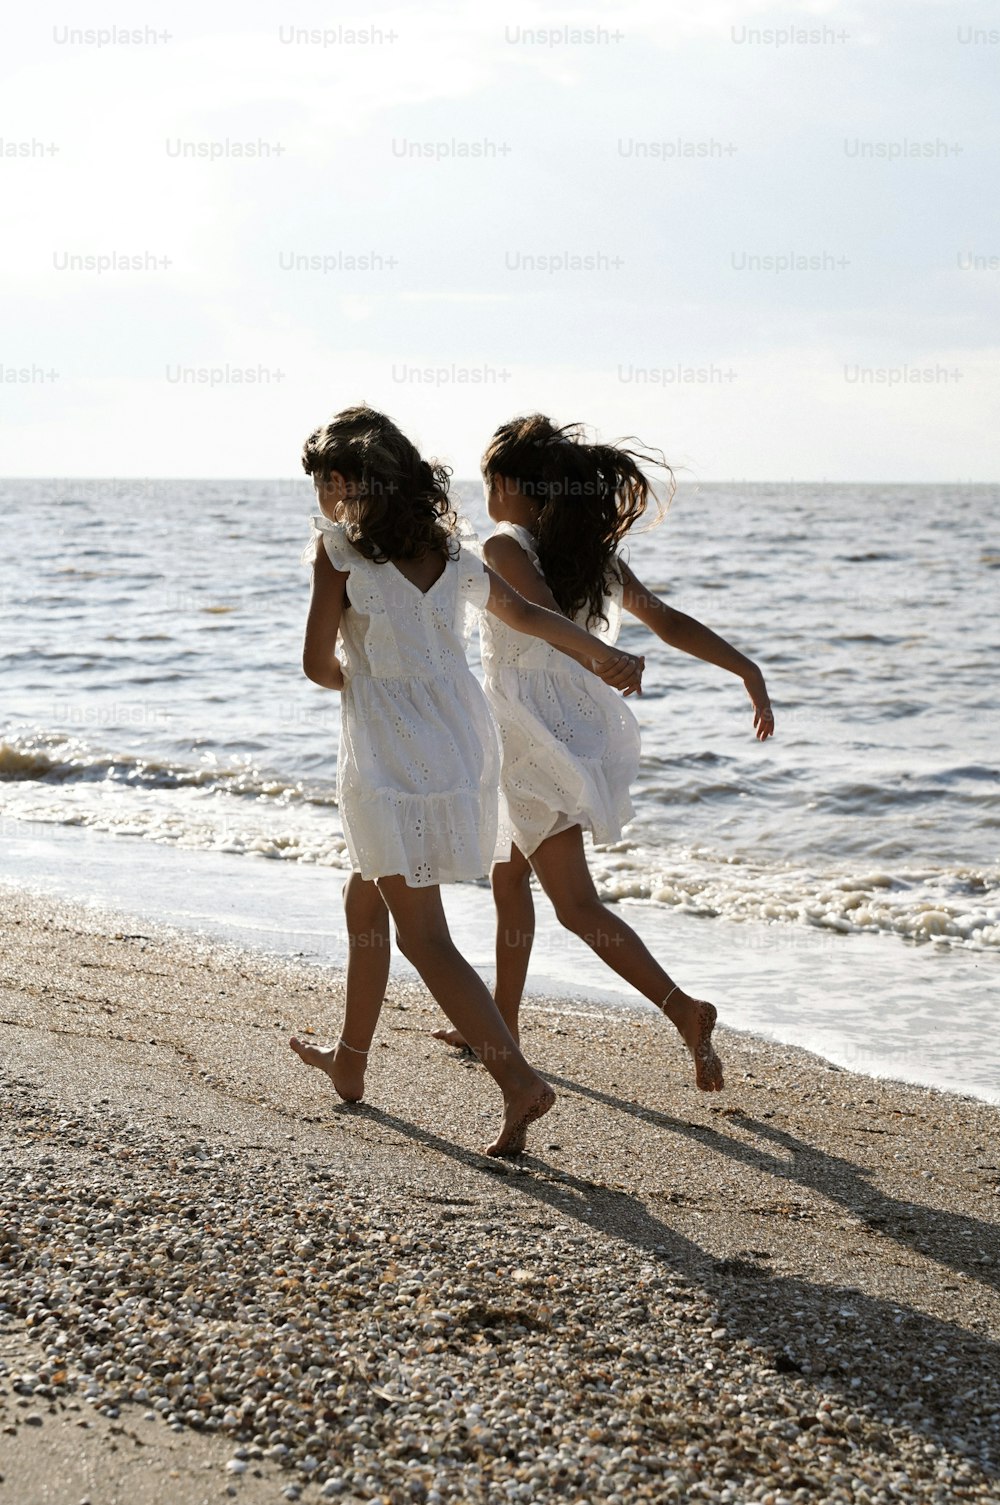 Dos chicas jóvenes corren por la playa hacia el agua